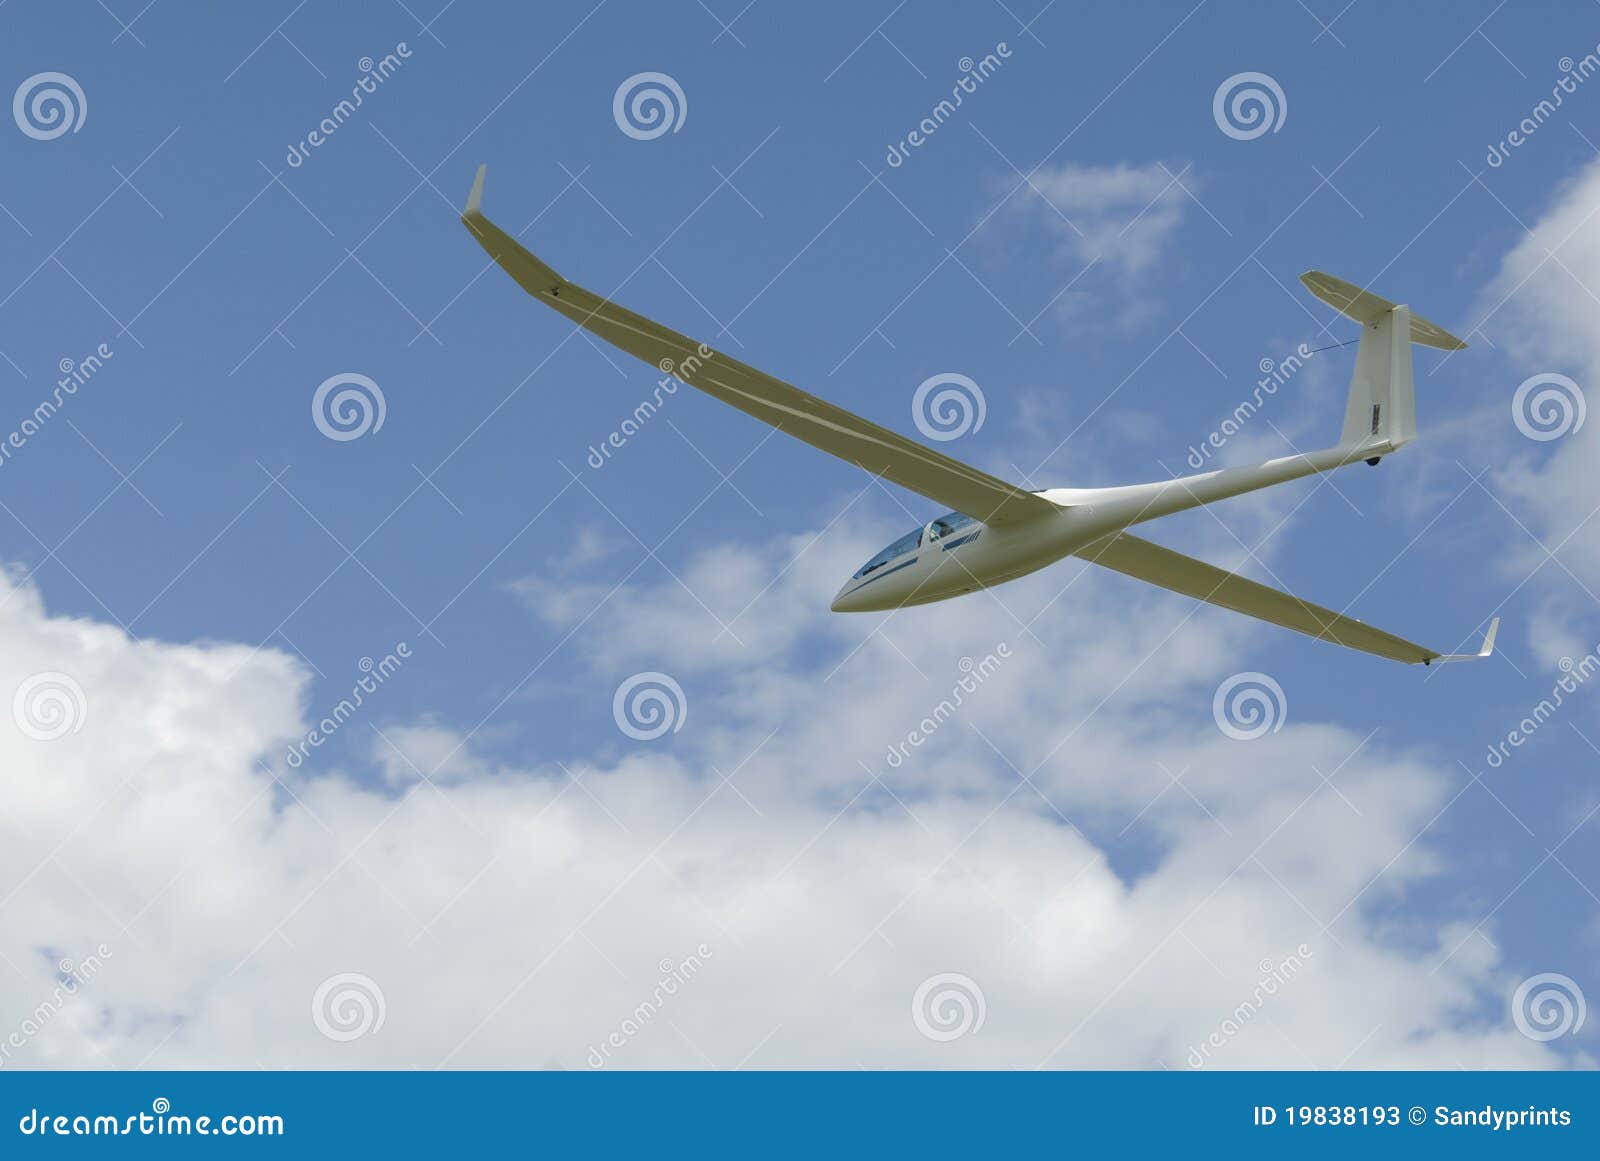 sailplane gliding through the sky.